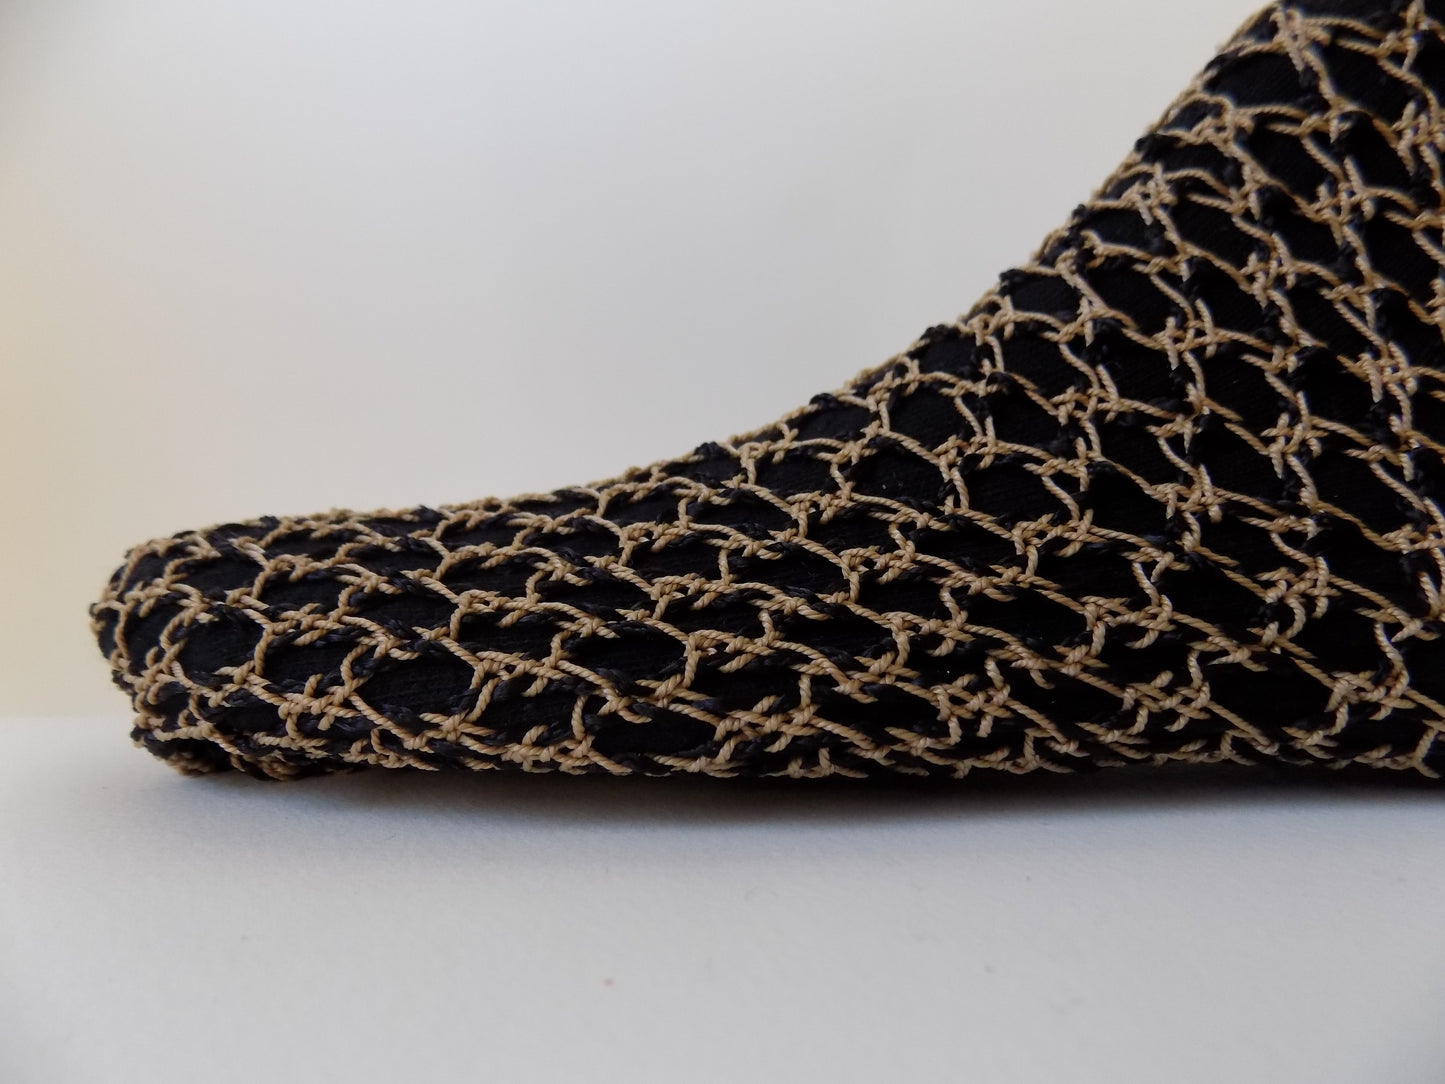 Footwear Patterning Fabric Studies Lacrosse Mesh